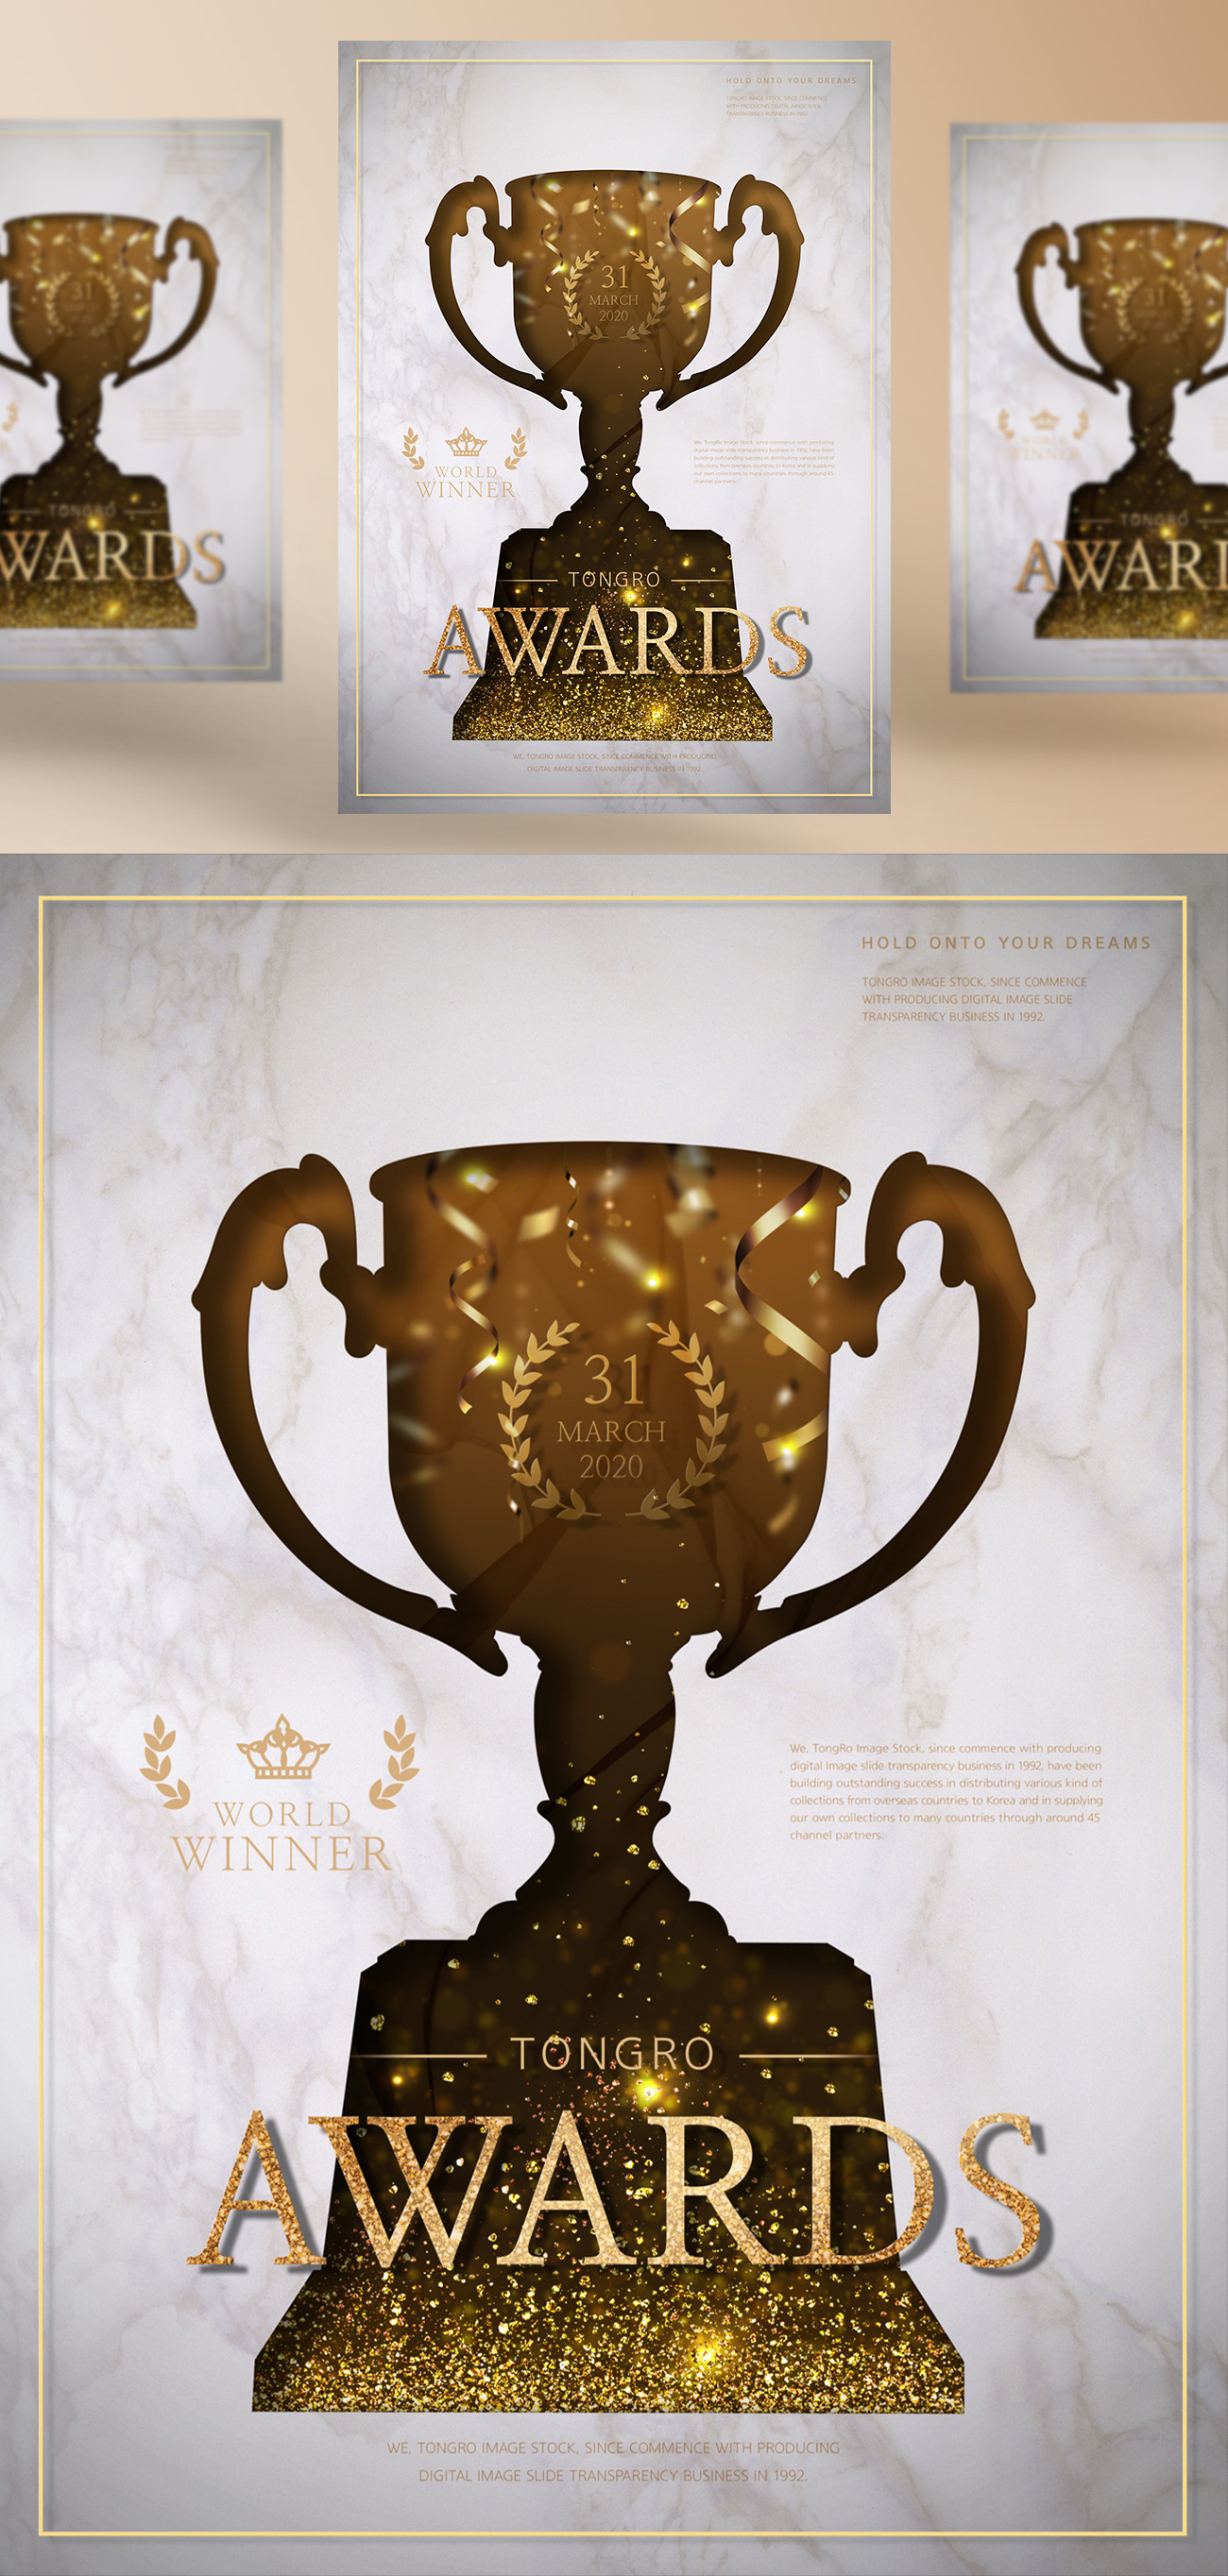 2019年最新颁奖盛典奖杯奖牌PSD海报模版素材 World